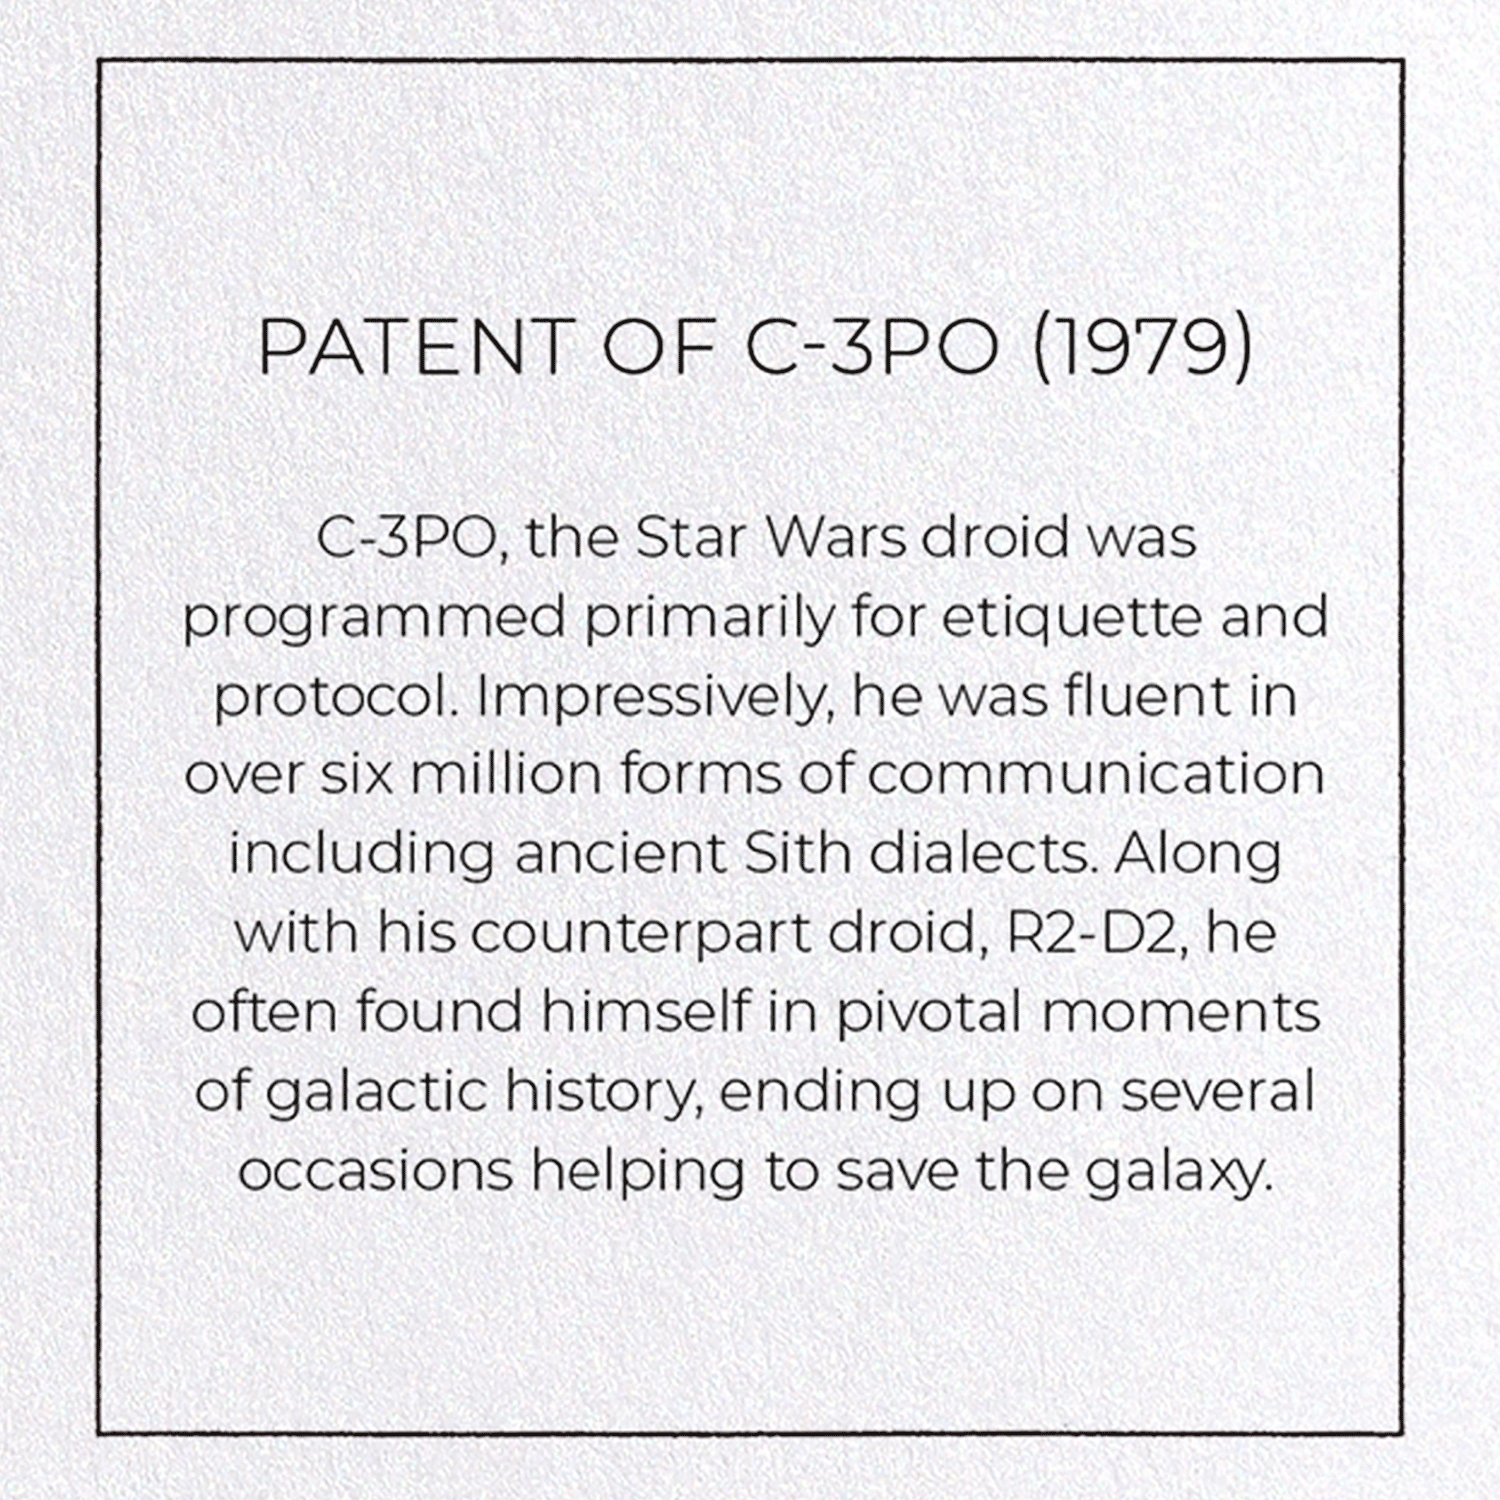 PATENT OF C-3PO (1979)